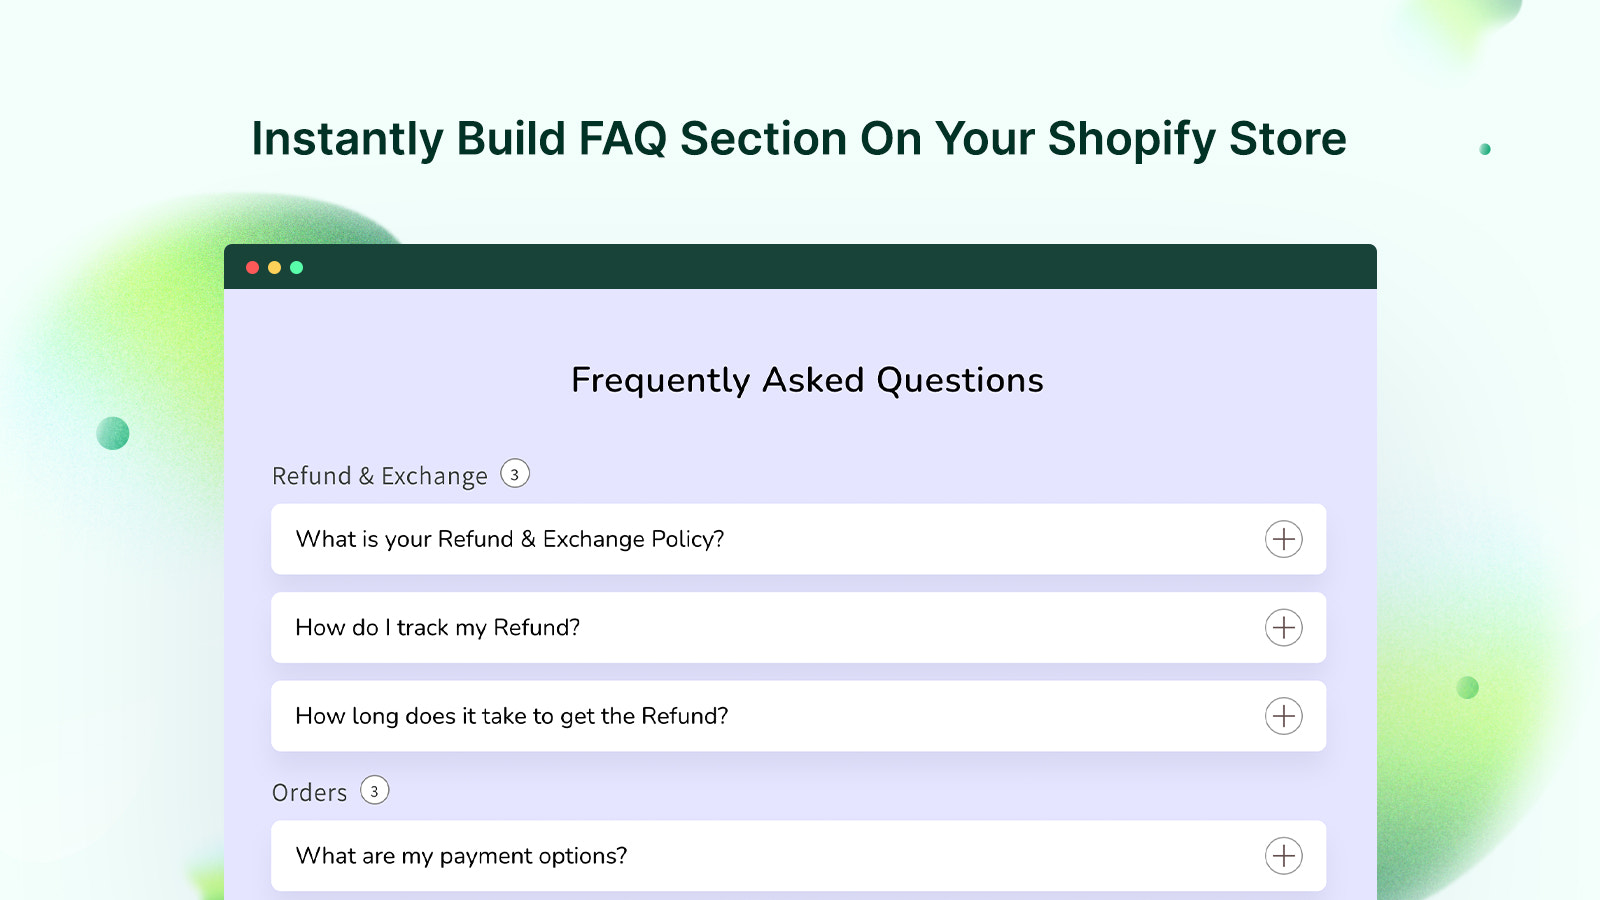 Construa Instantaneamente uma Seção de FAQ em Sua Loja Shopify